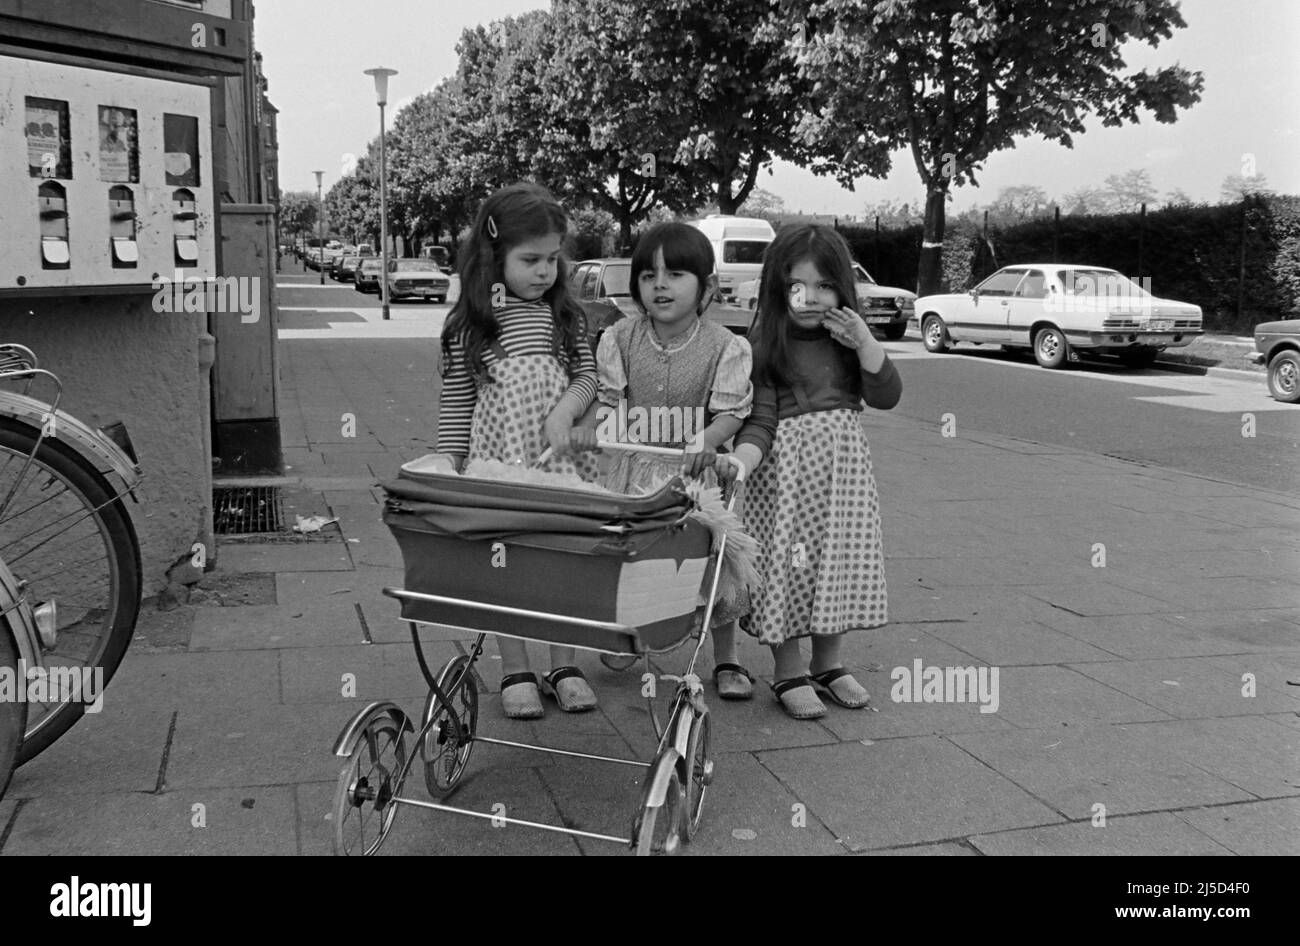 Essen, 20.05.1983 - Türkische Mädchen spielen mit einem Kinderwagen in einer Moschee in Essen. [Automatisierte Übersetzung] Stockfoto